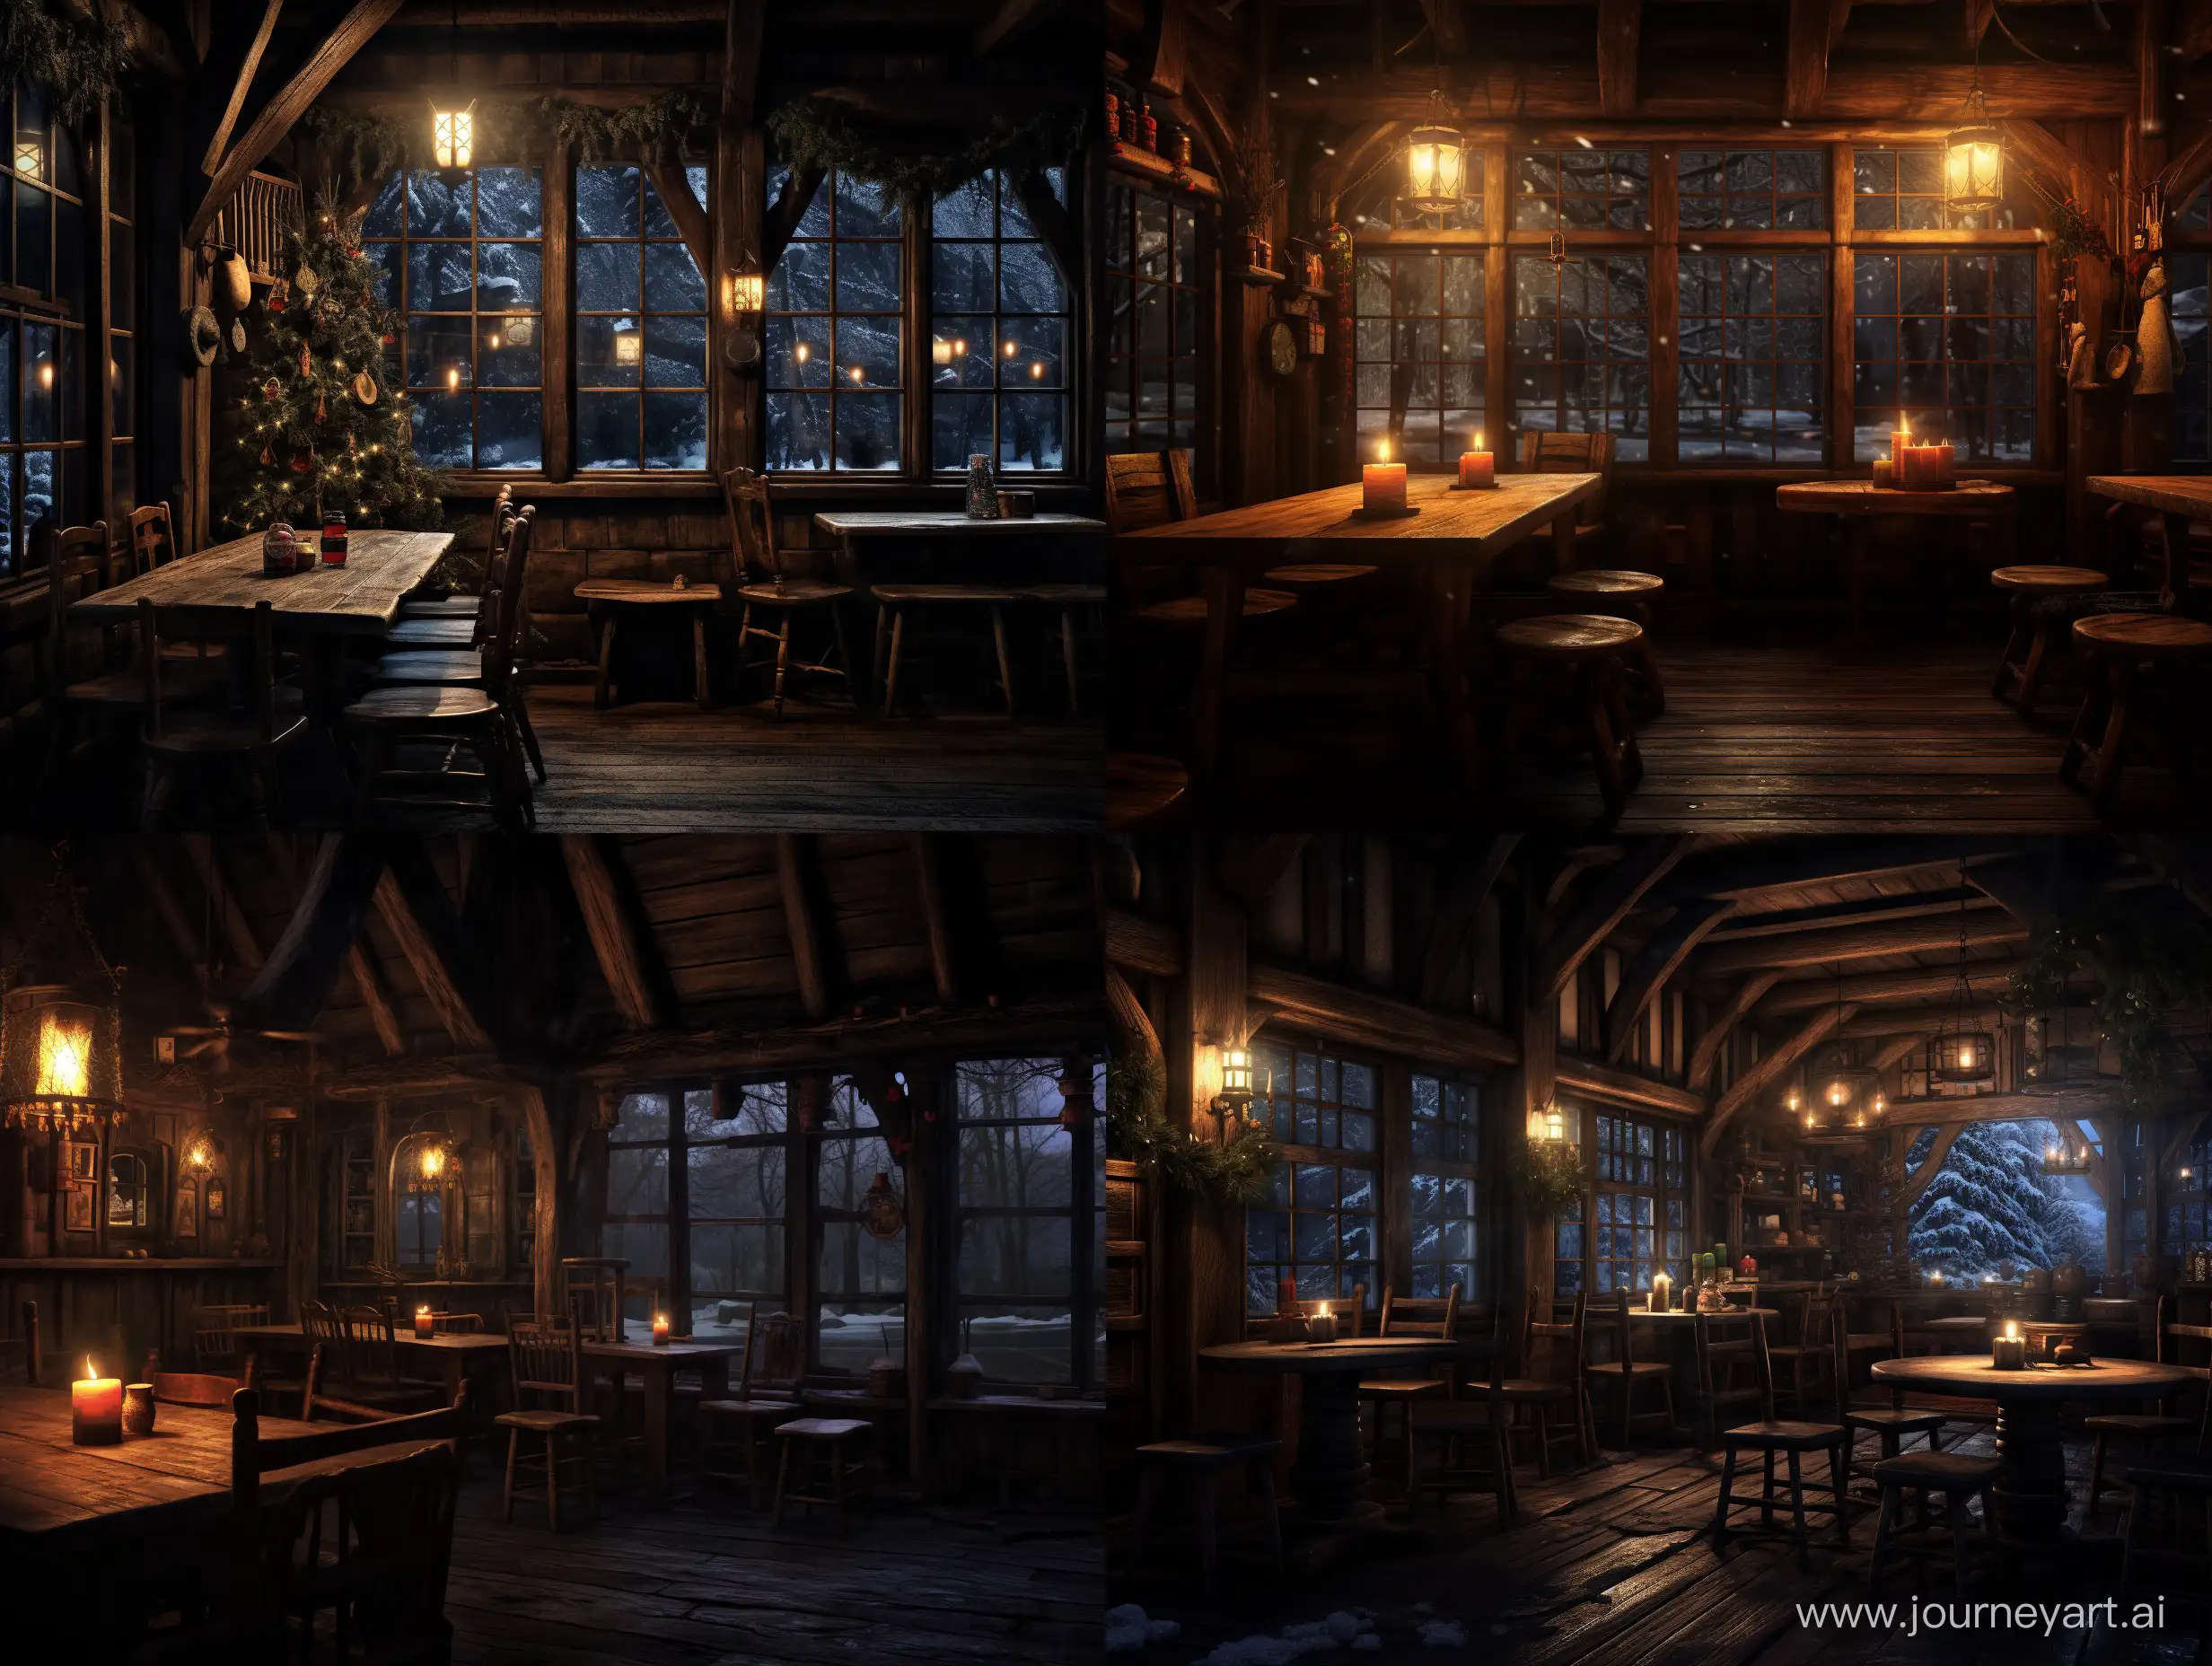 слабо освещённый интерьер деревянной таверны, за окном ночь и идёт снег, освещение свечей